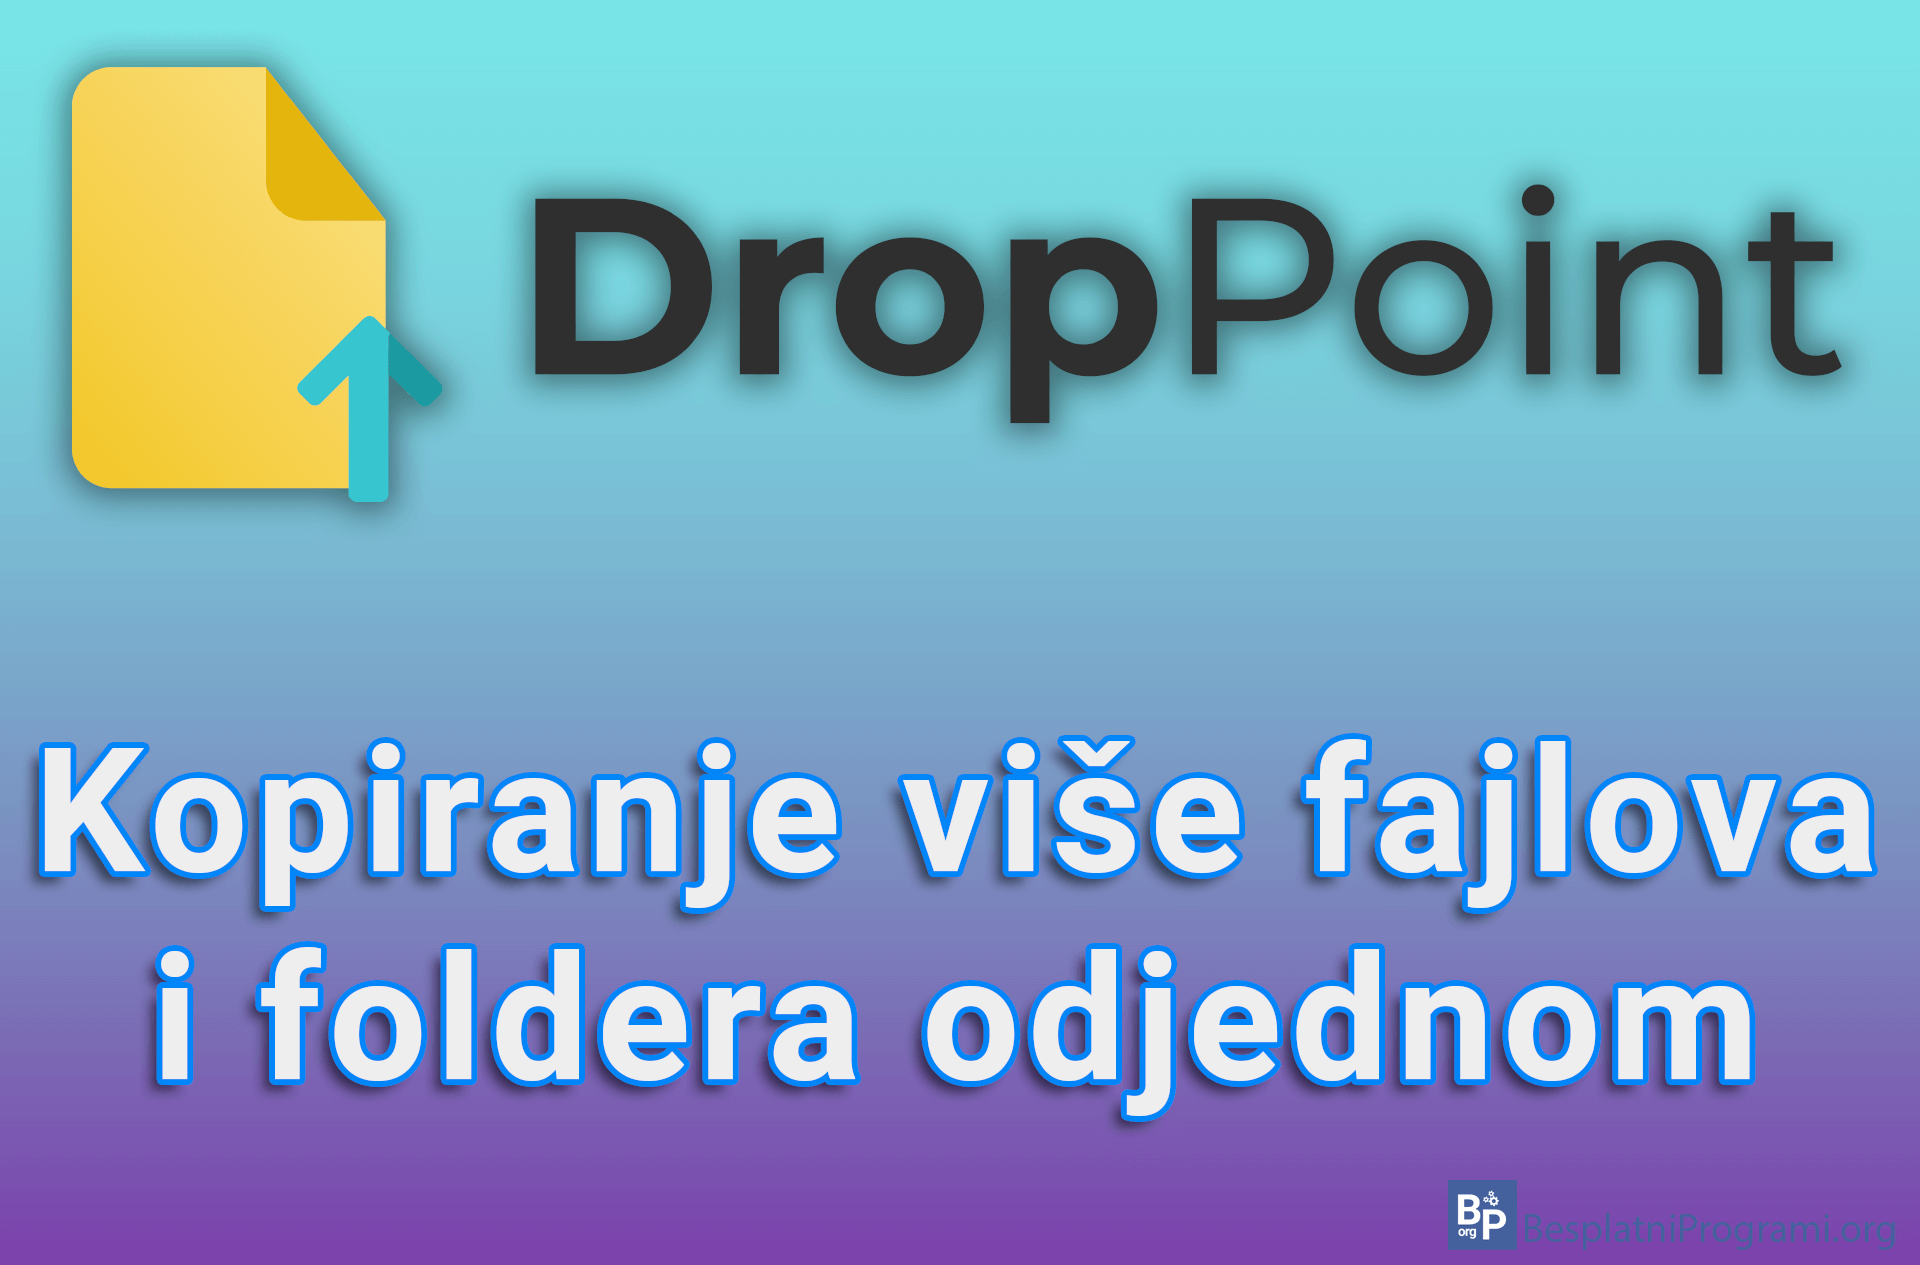 DropPoint - Kopiranje više fajlova i foldera odjednom